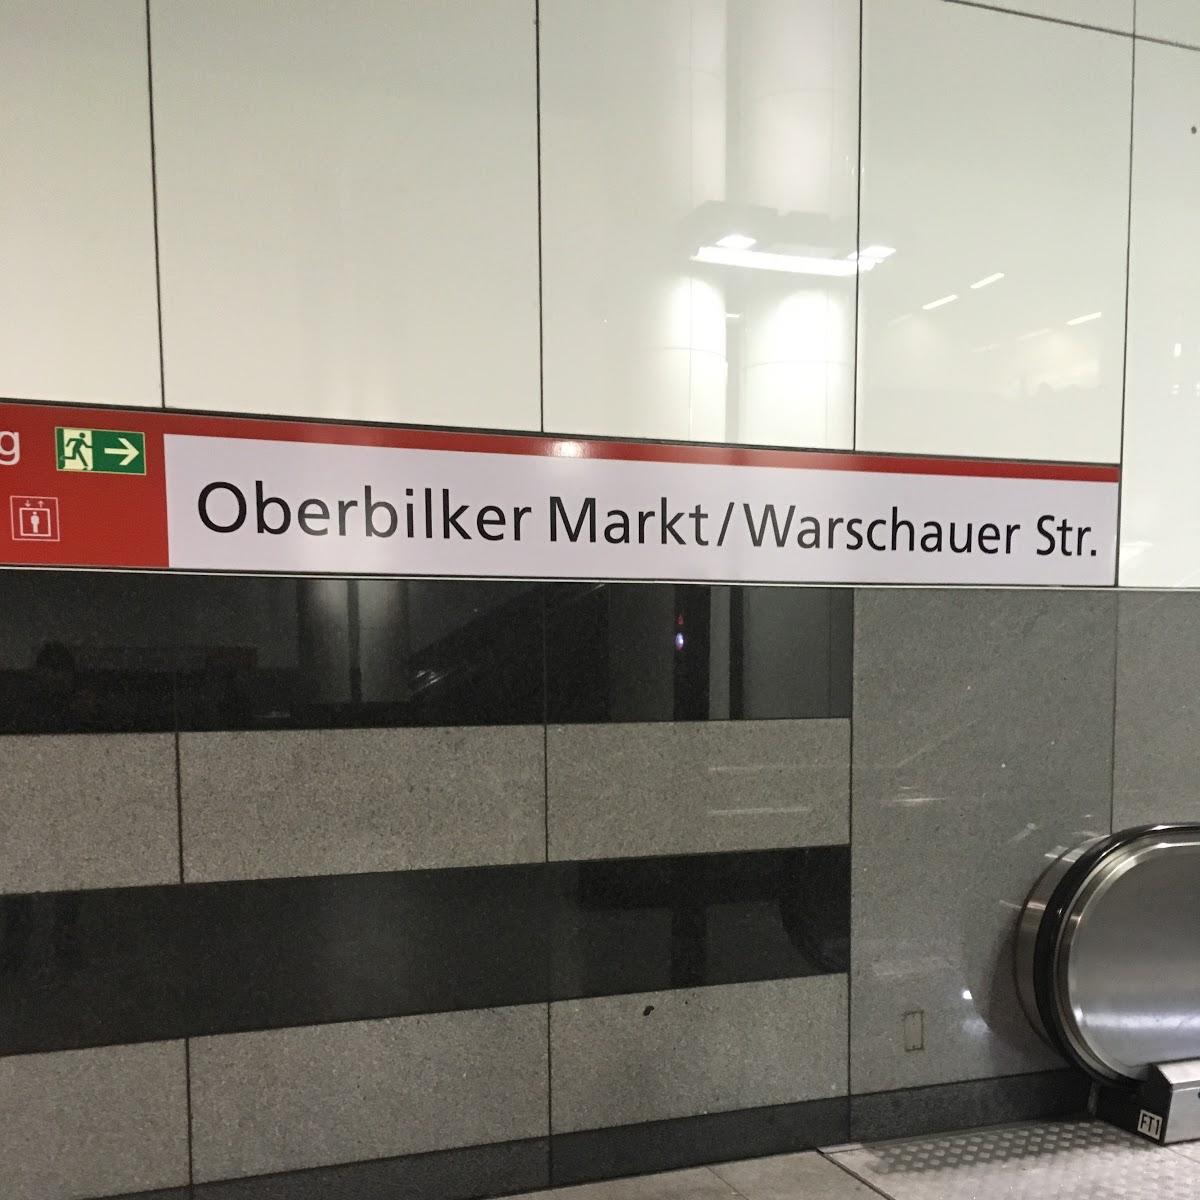 Restaurant "Oberbilker Markt" in Düsseldorf